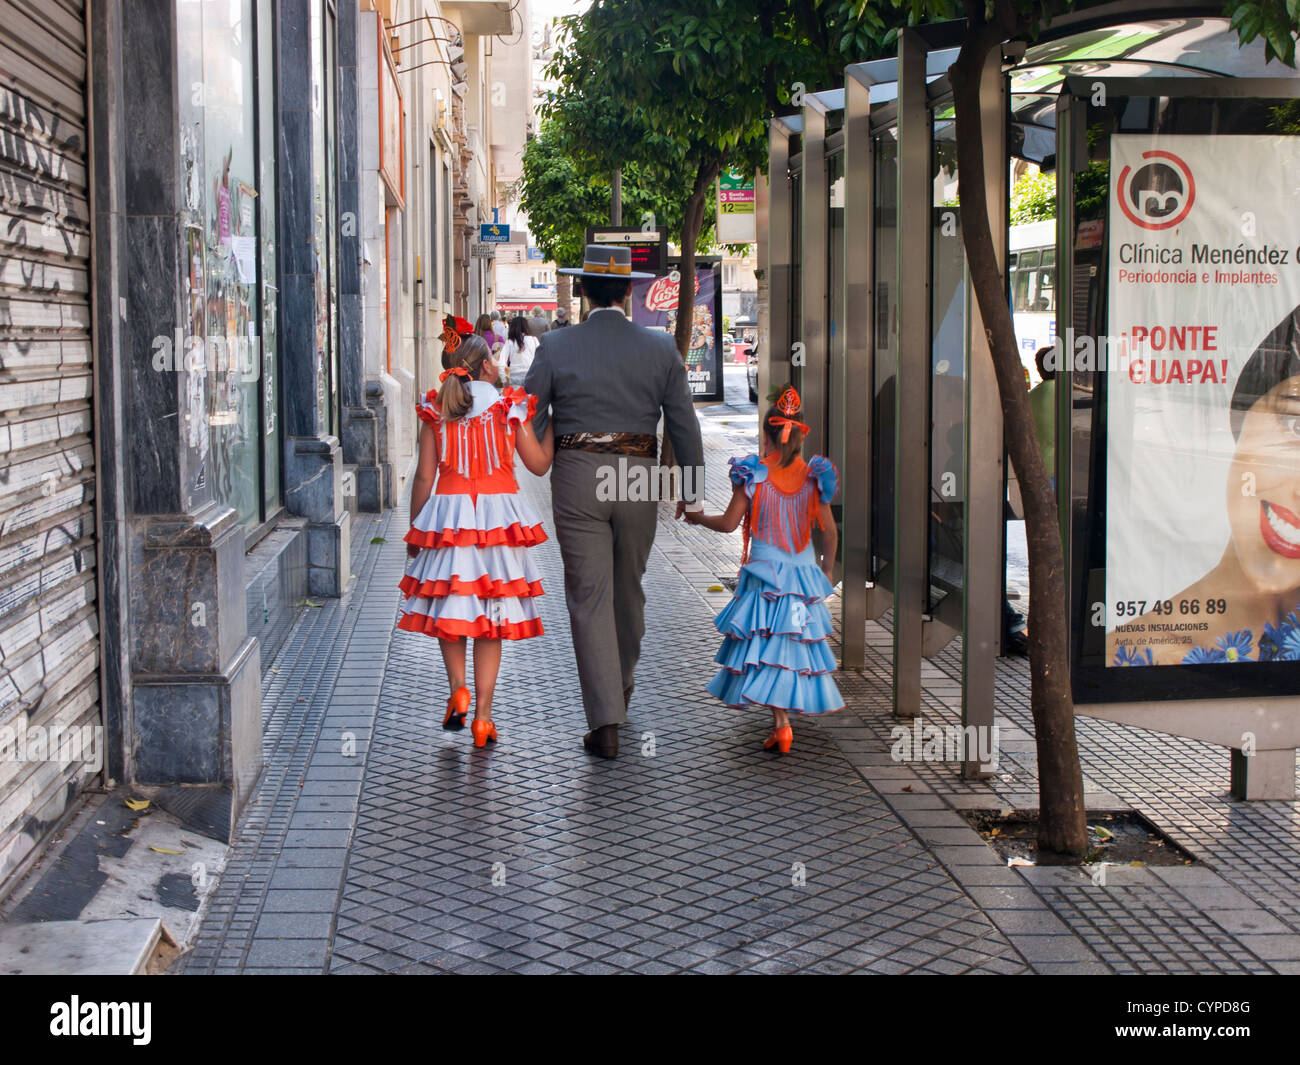 Scena di strada a Cordoba Andalusia Spagna due ragazze con il tradizionale abito flamenco,traje de flamenca con uomo a camminare Foto Stock